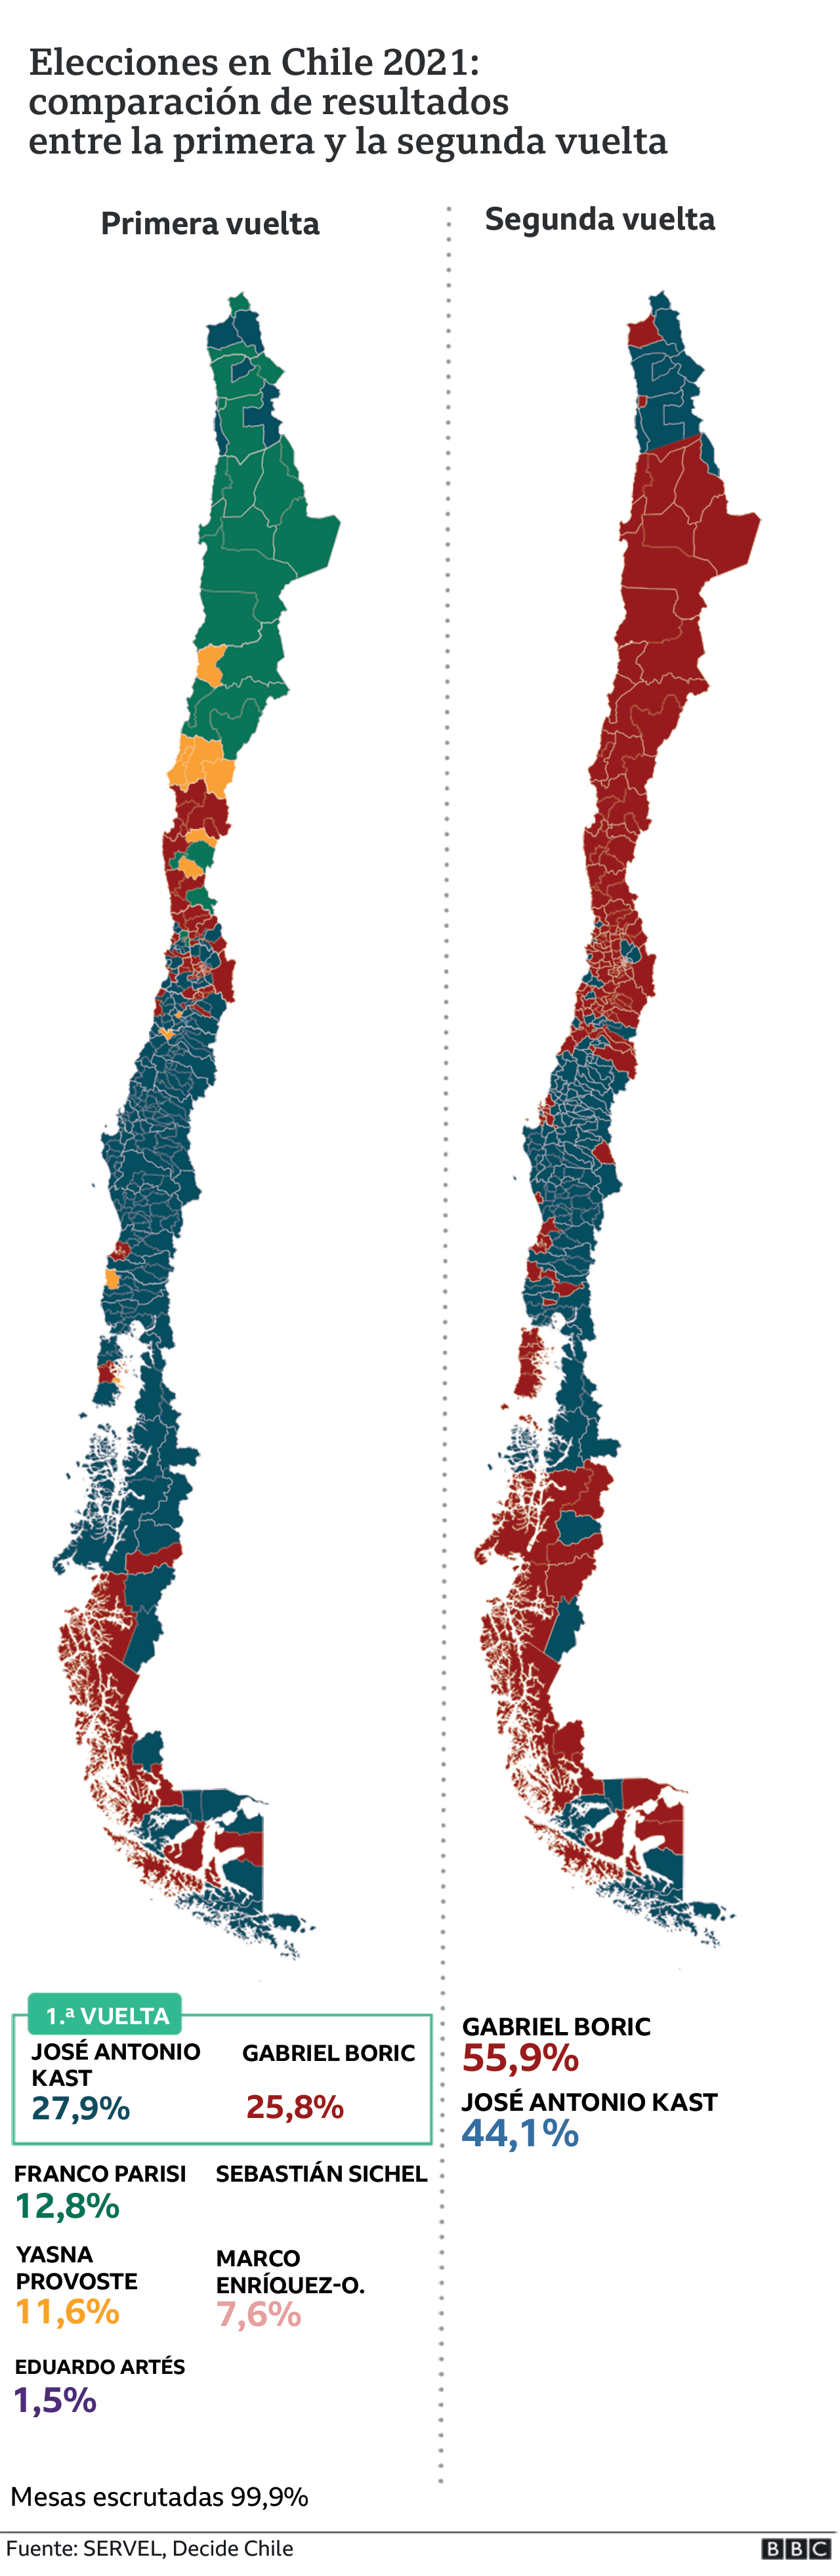 Comparación resultados primera y segunda vuelta de elecciones Chile 2021